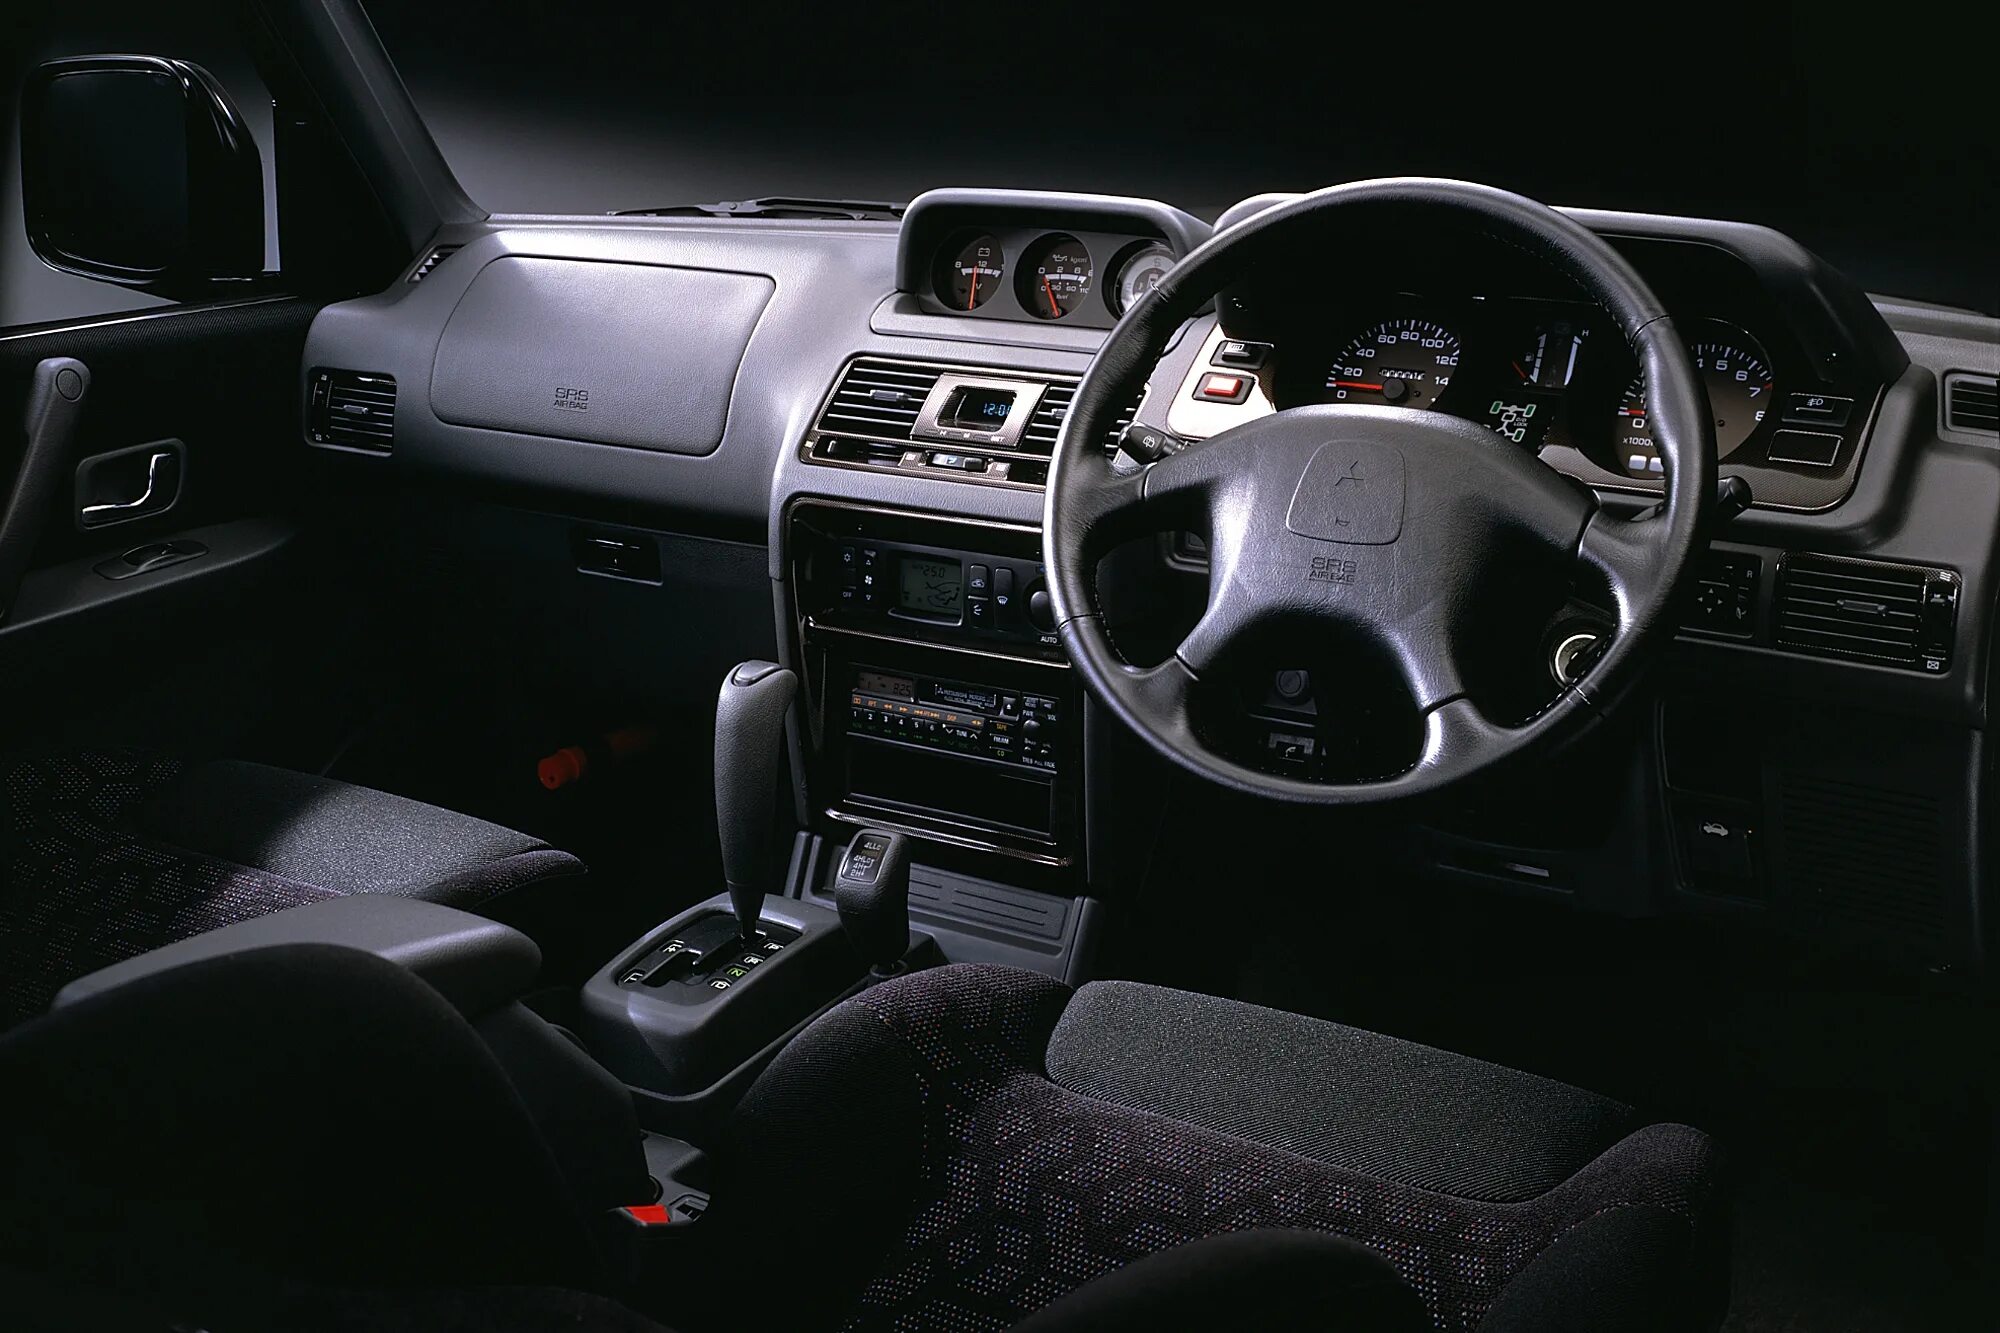 Торпеда паджеро. Mitsubishi Pajero Evolution 1997. Mitsubishi Pajero EVO 1997. Mitsubishi Pajero 2 салон. Mitsubishi Pajero 1999 салон.